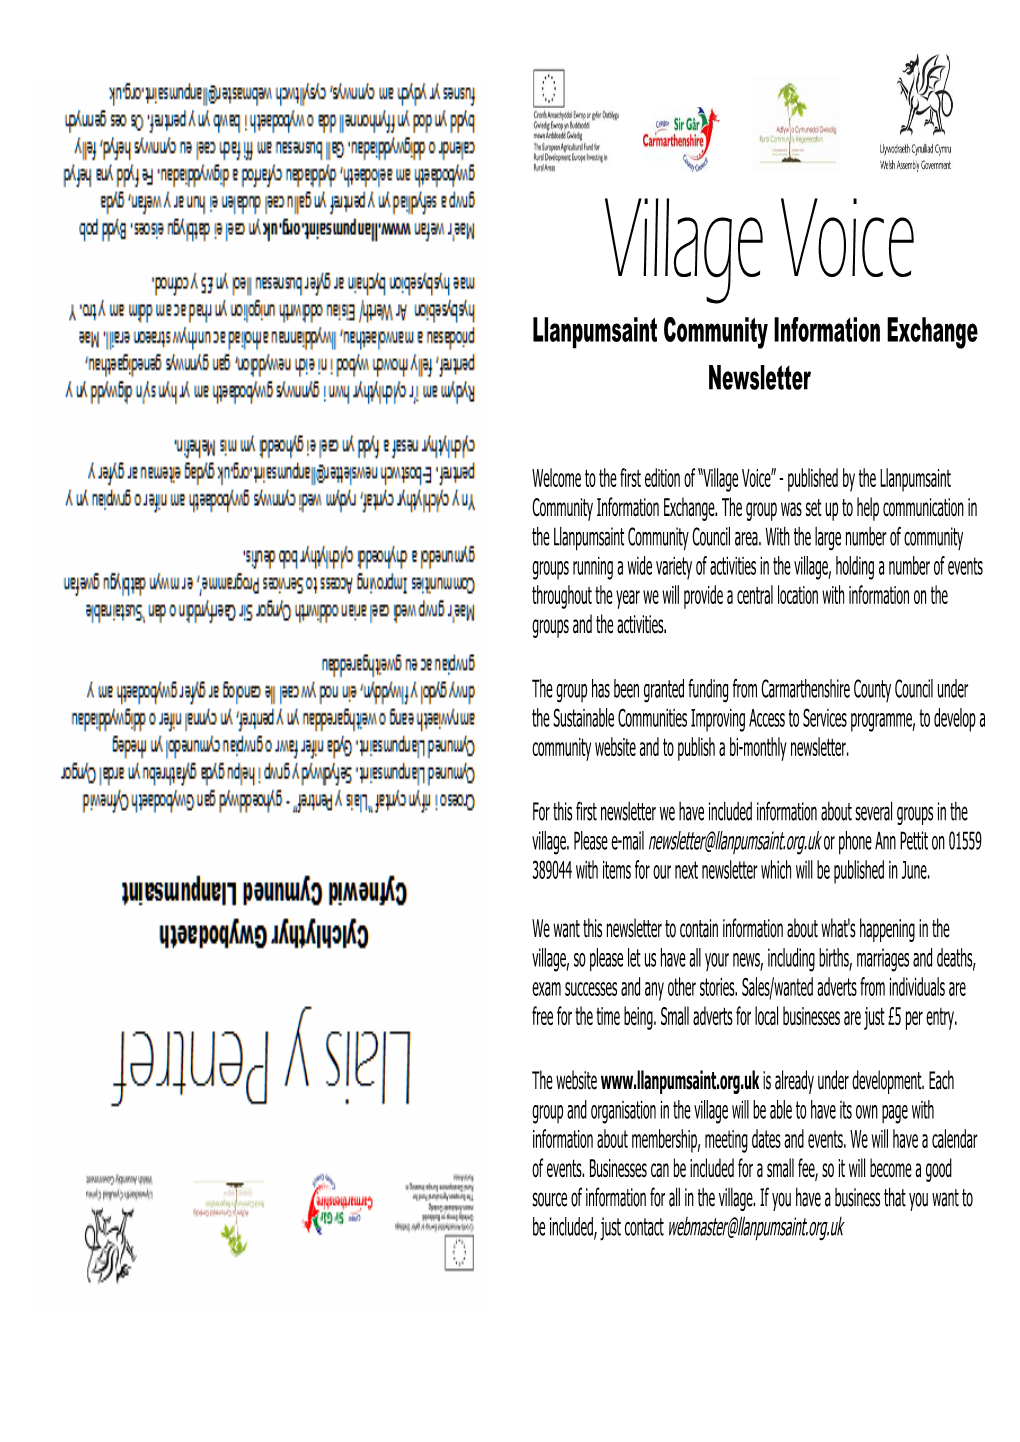 Village Voice Llanpumsaint Community Information Exchange Newsletter